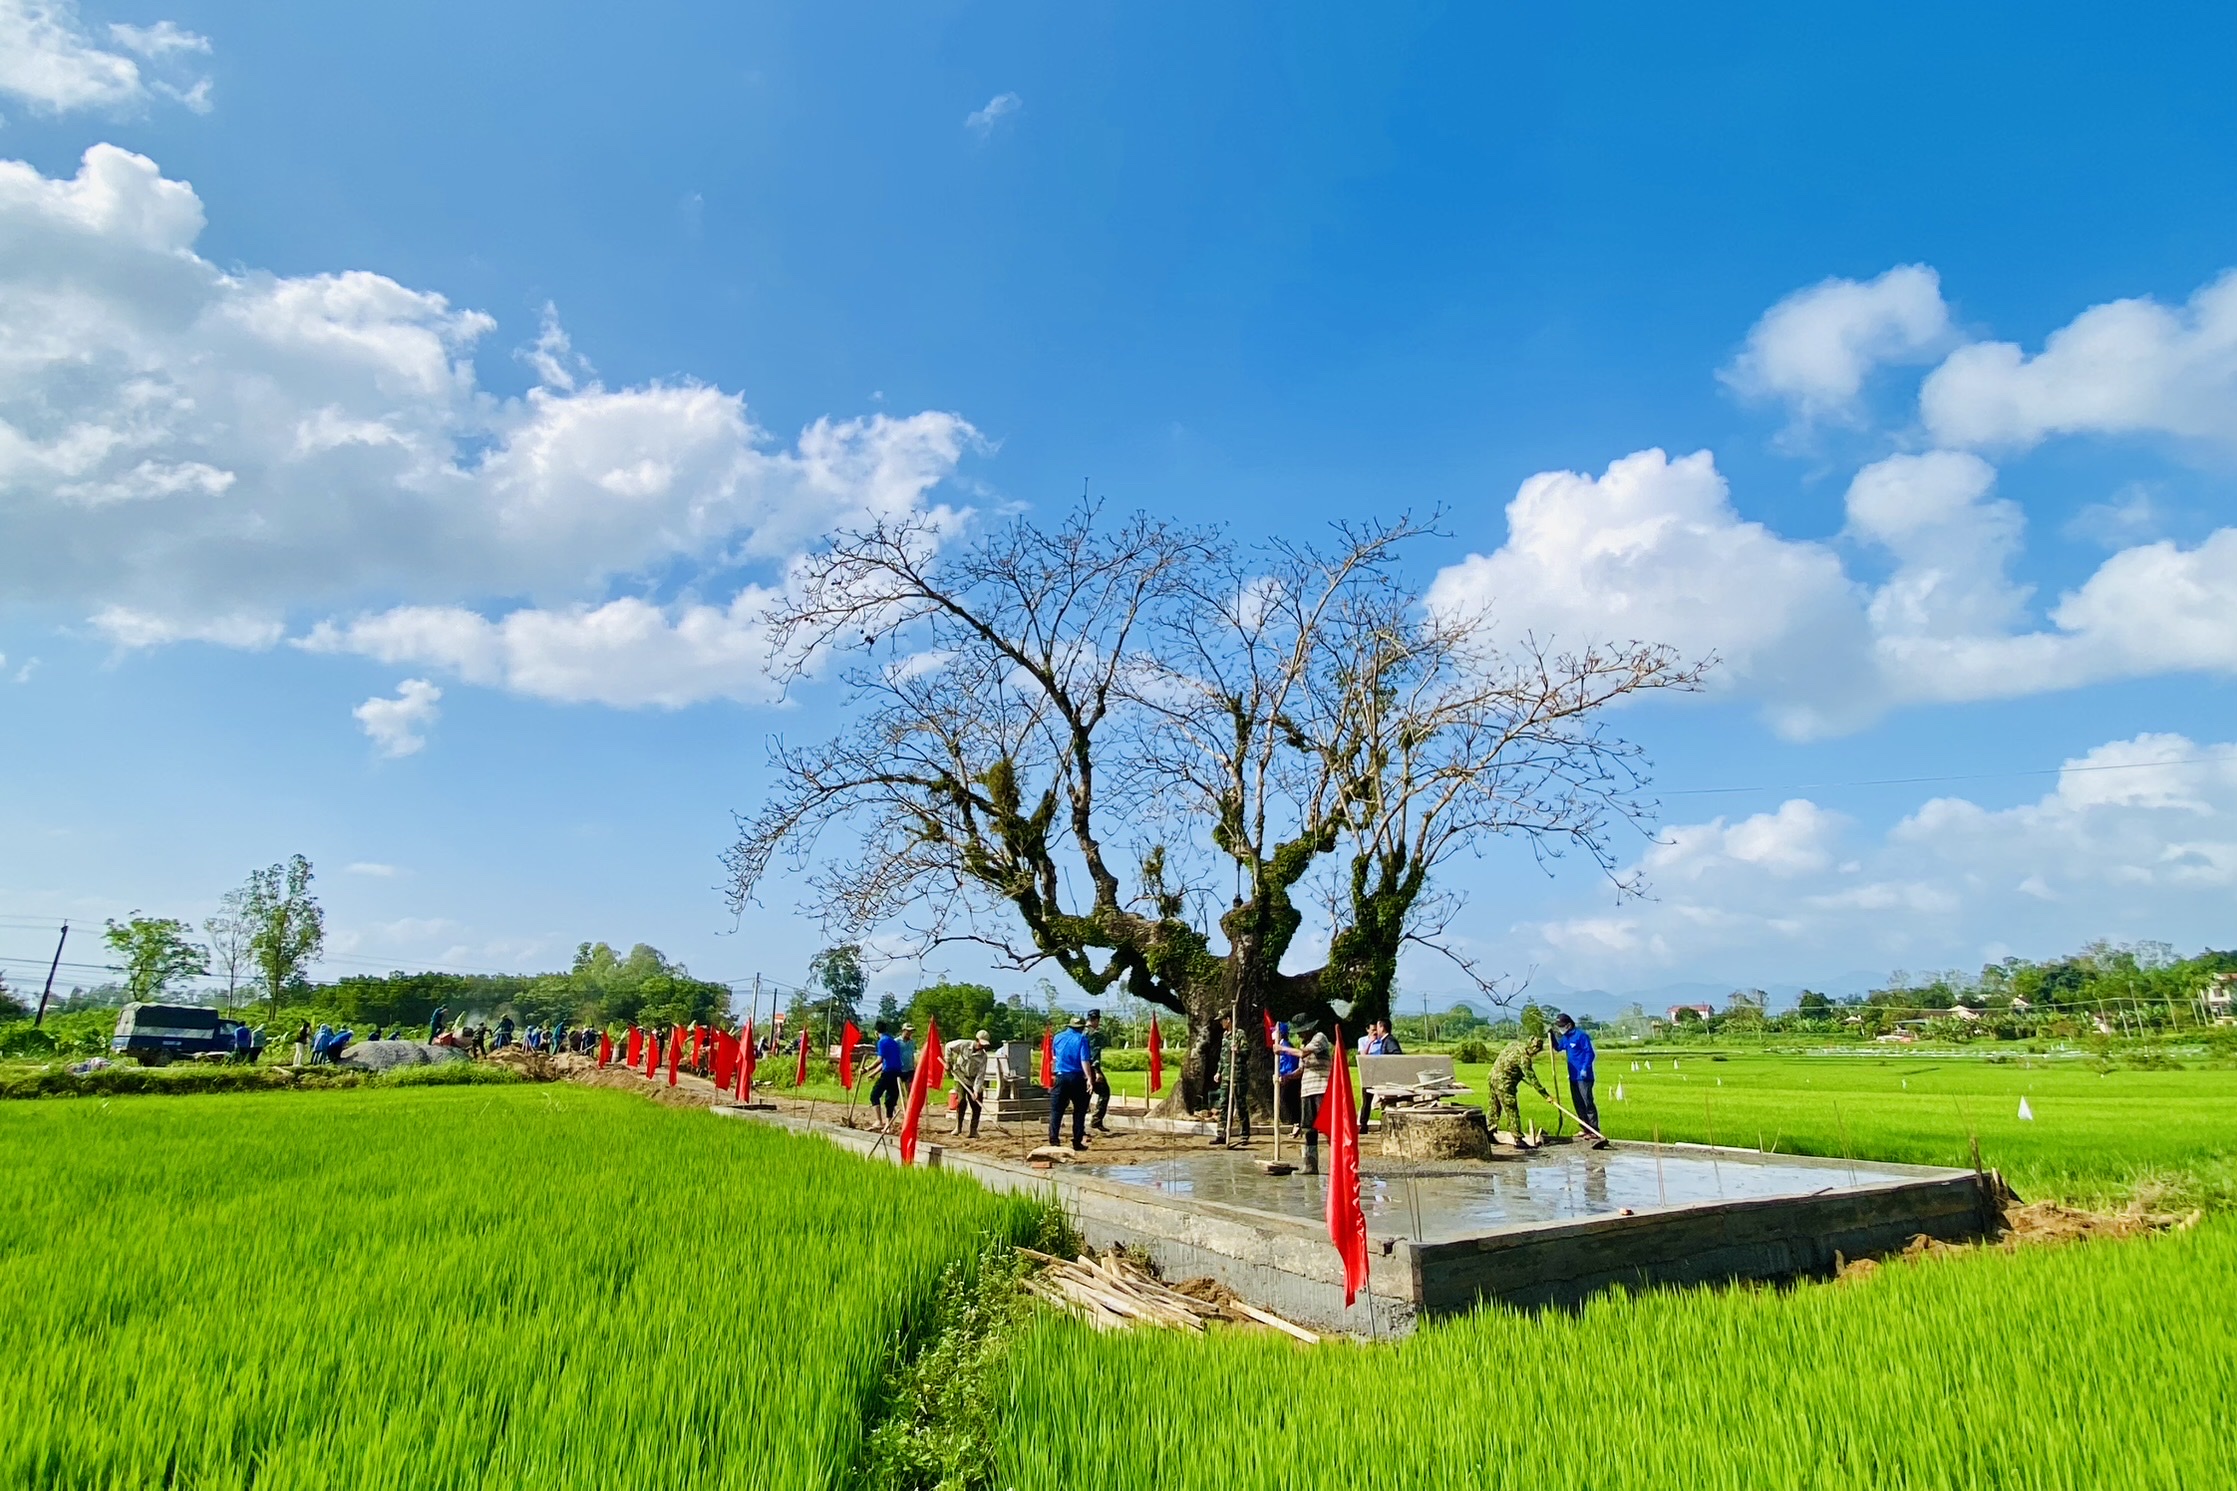 Di tích lịch sử Cây gạo: Cây gạo từ lâu đã là một biểu tượng của đất nước Việt Nam. Di tích lịch sử Cây gạo được bảo tồn và phát triển để giữ gìn và truyền lại văn hóa và lịch sử cho thế hệ sau. Năm 2024, di tích này vẫn là một điểm đến thu hút nhiều du khách trong nước và quốc tế. Hãy xem hình ảnh liên quan để khám phá thêm về lịch sử và văn hóa của cây gạo Việt Nam.